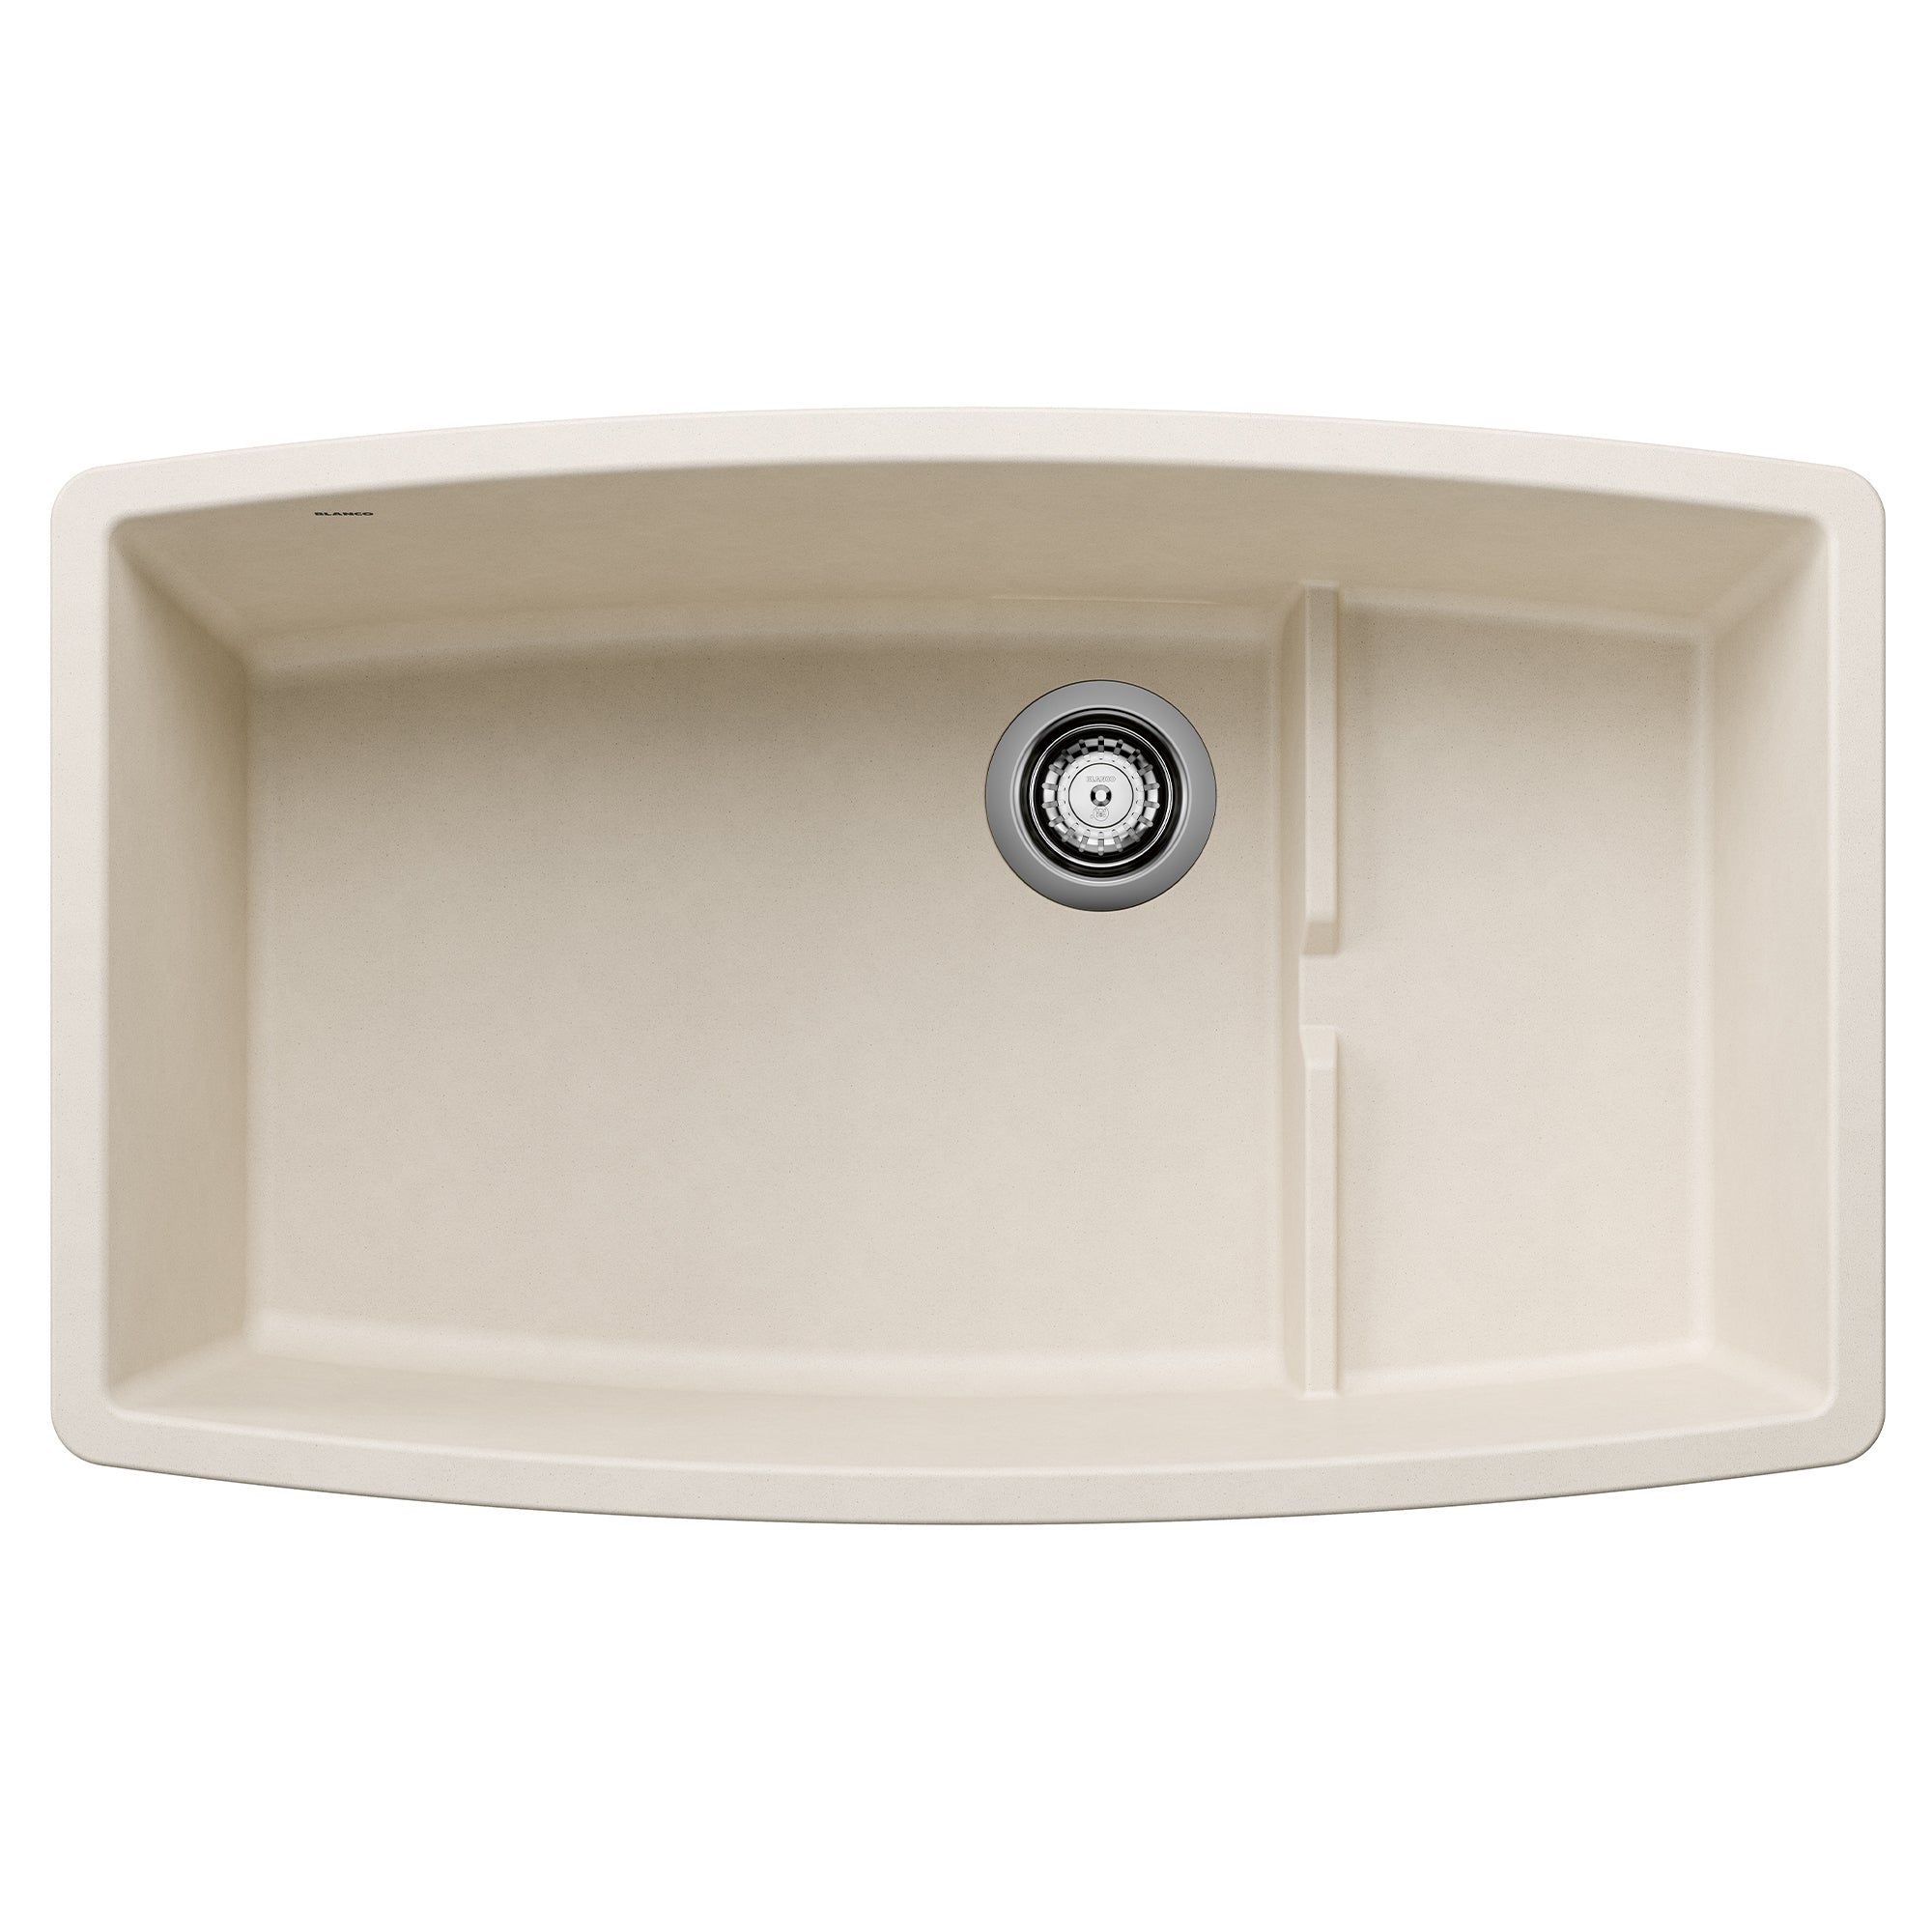 BLANCO Performa Cascade 32" SILGRANIT Undermount Kitchen Sink with Colander in Soft White